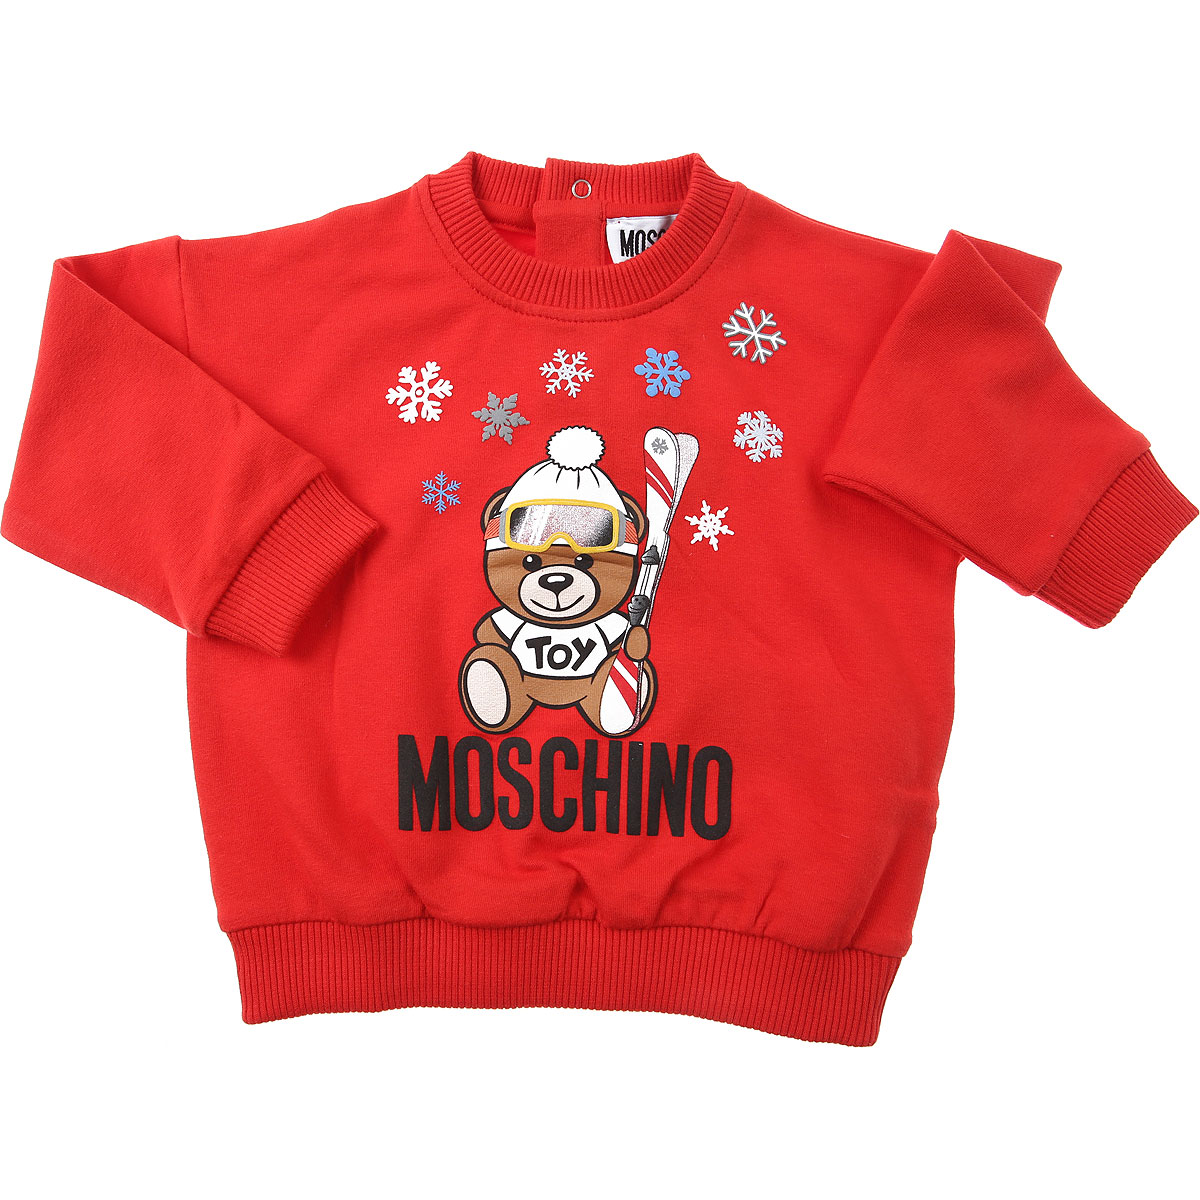 Moschino Baby Sweatshirt & Kapuzenpullover für Jungen Günstig im Sale, Rot, Baumwolle, 2017, 12 M 18M 3Y 6M 9M